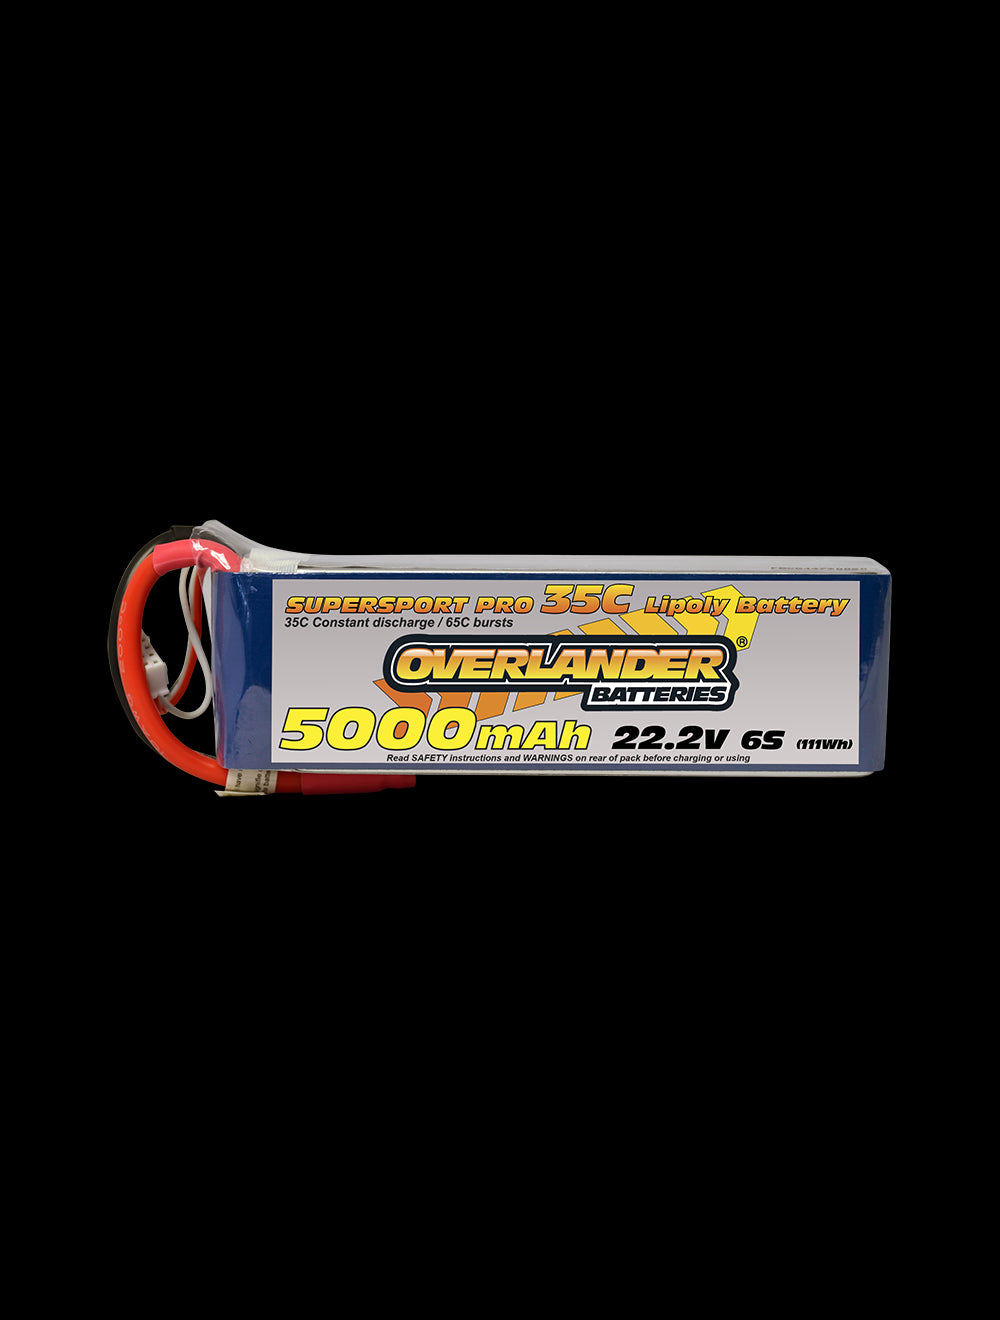 Overlander 5000mAh 22.2V 6S 35C Supersport Pro LiPo Battery - XT60 Connector 2580